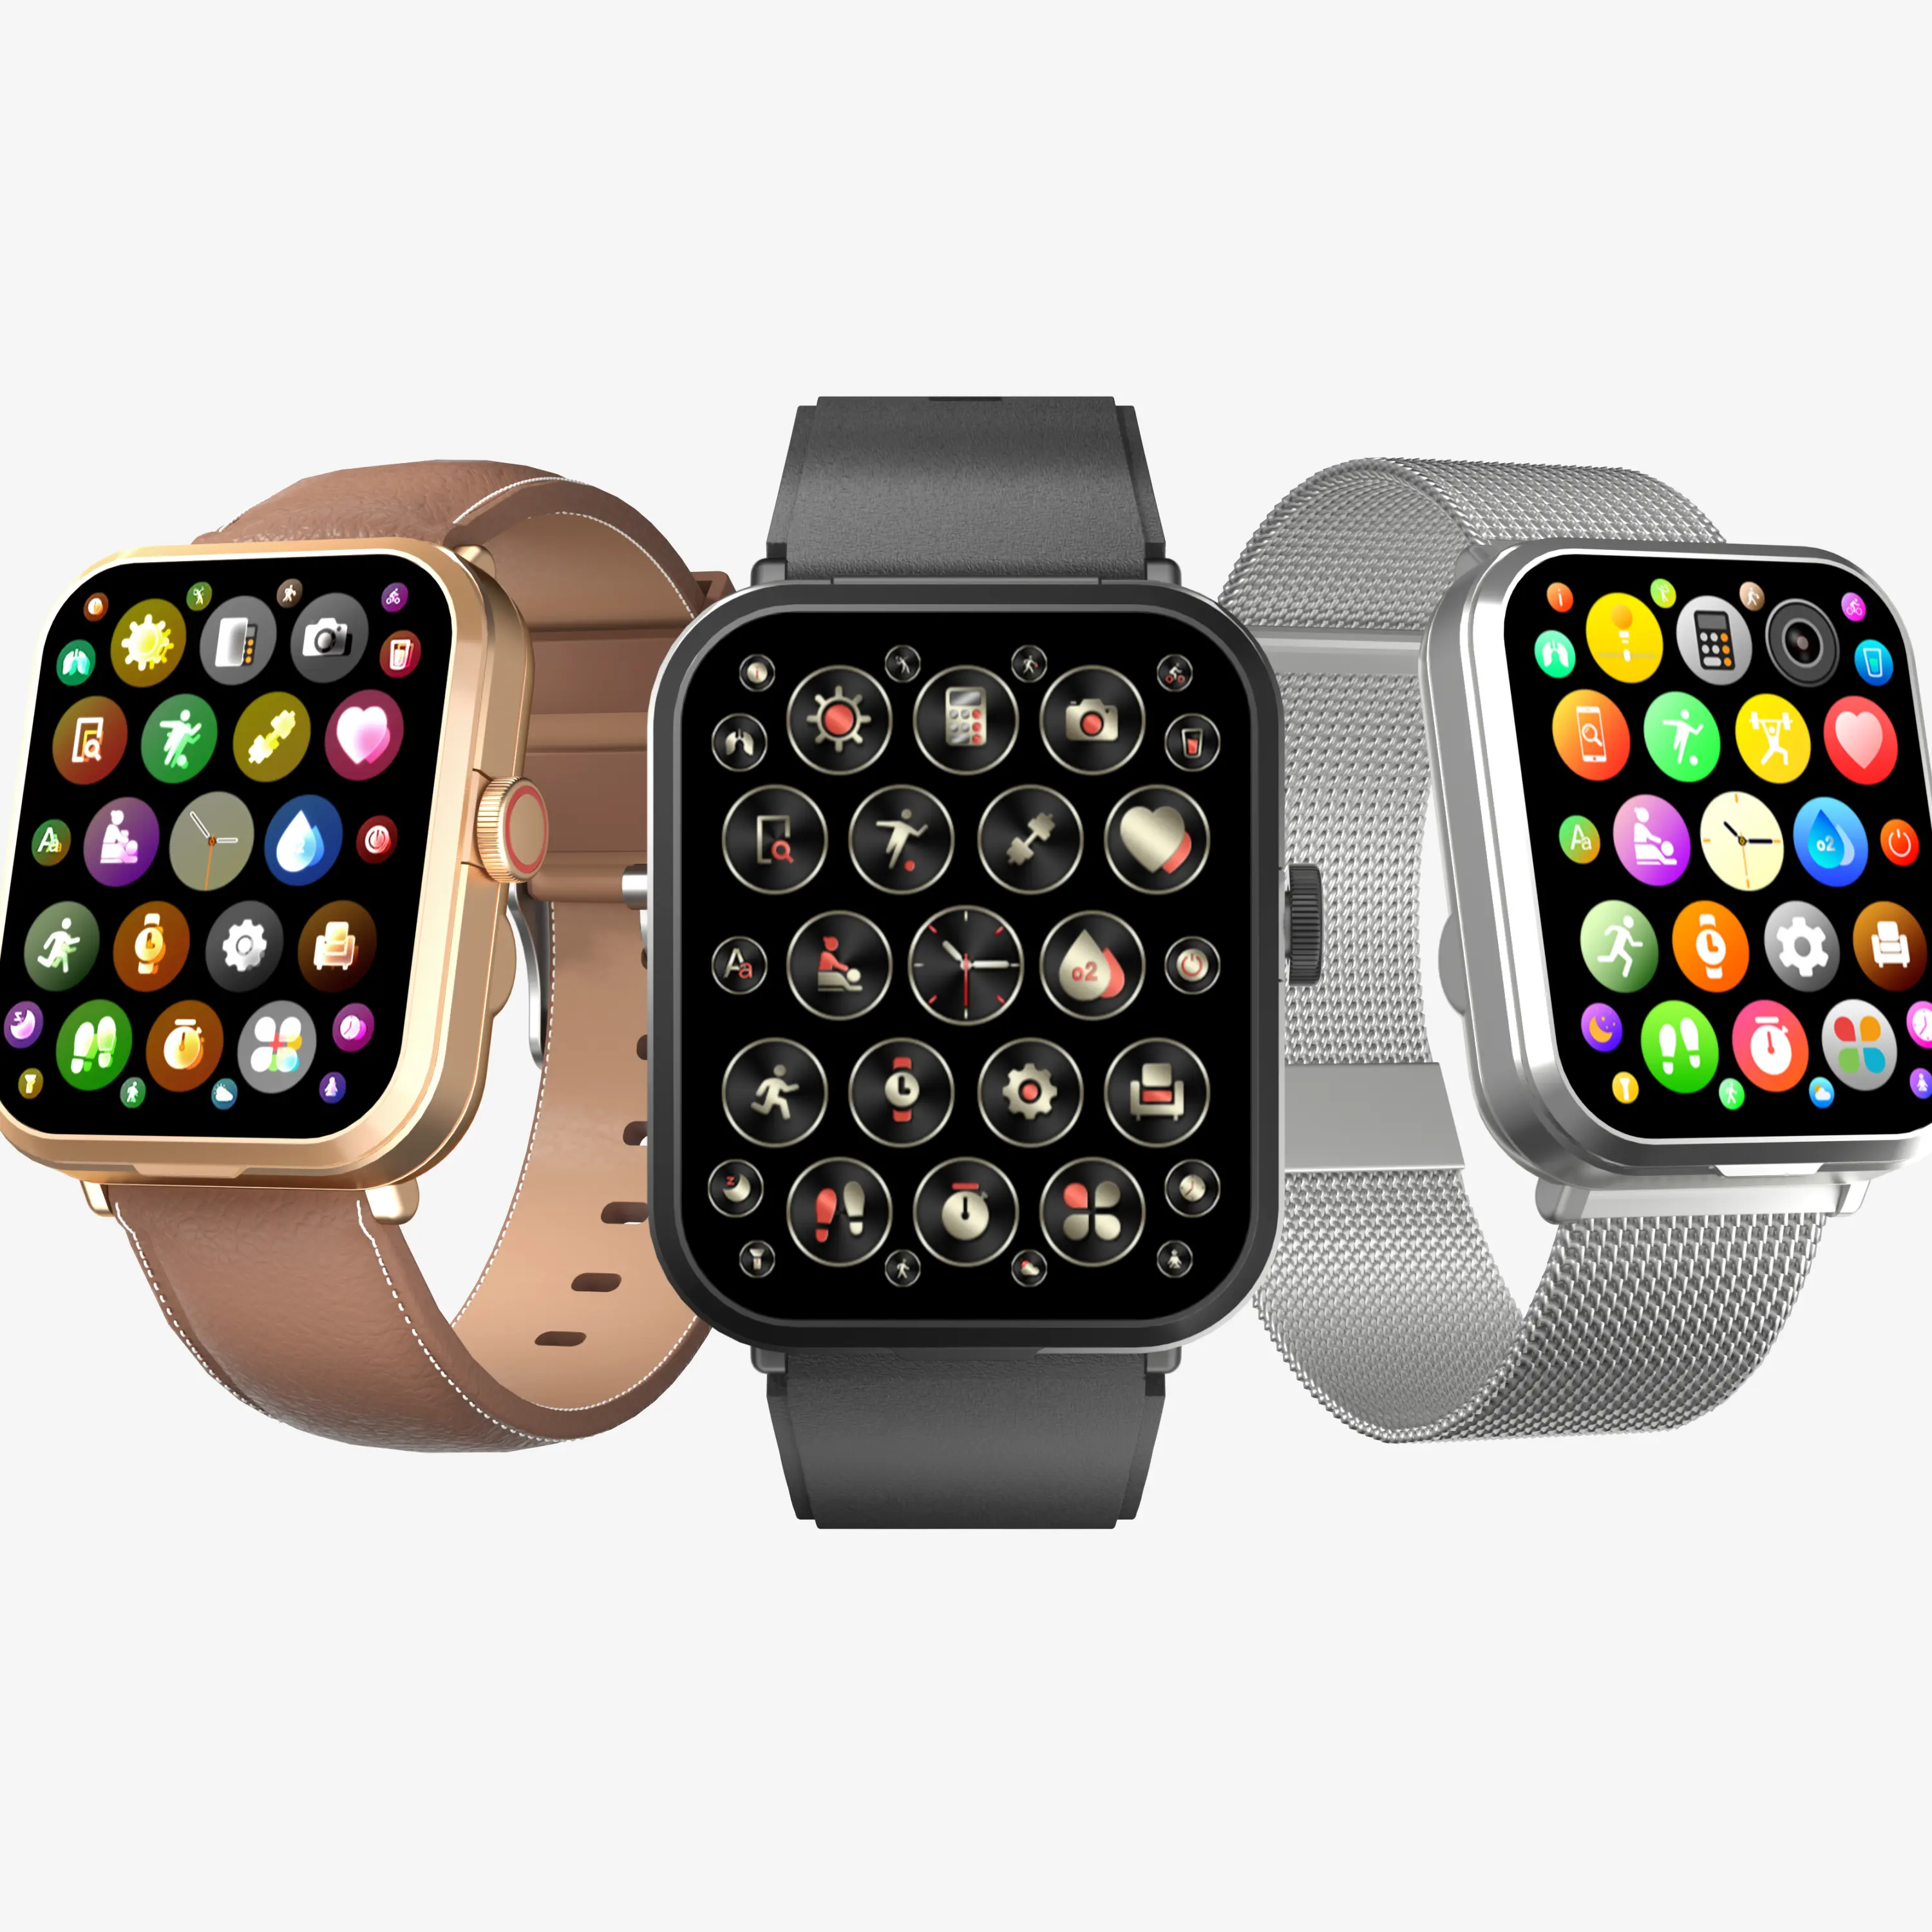 OEM 2 в 1, умные часы, наушники с беспроводными наушниками, музыкальный плеер, пульсометр, измеритель артериального давления, умные часы для Apple